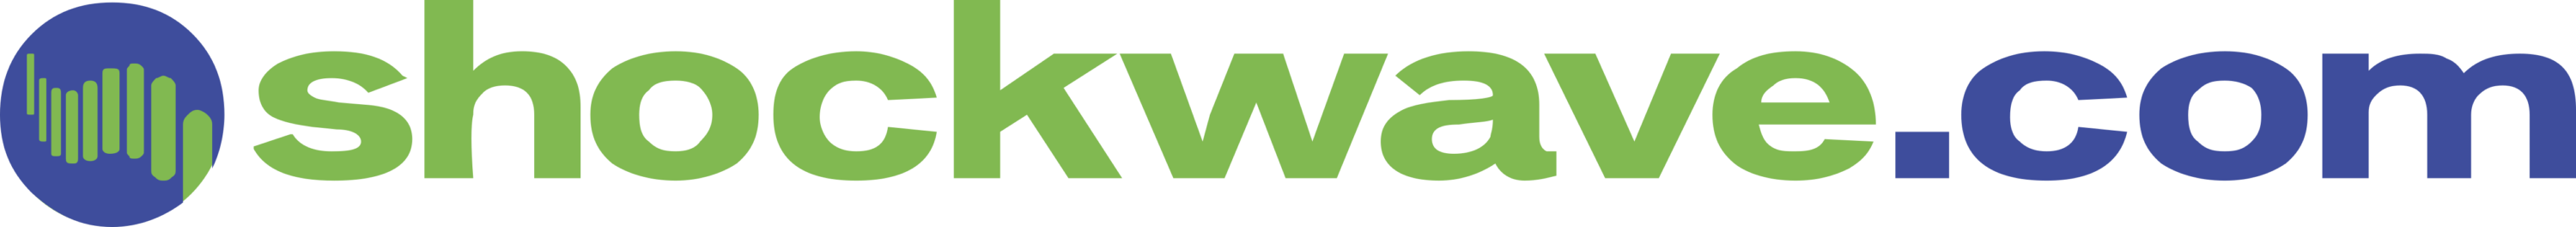 Shockwave.com Logo